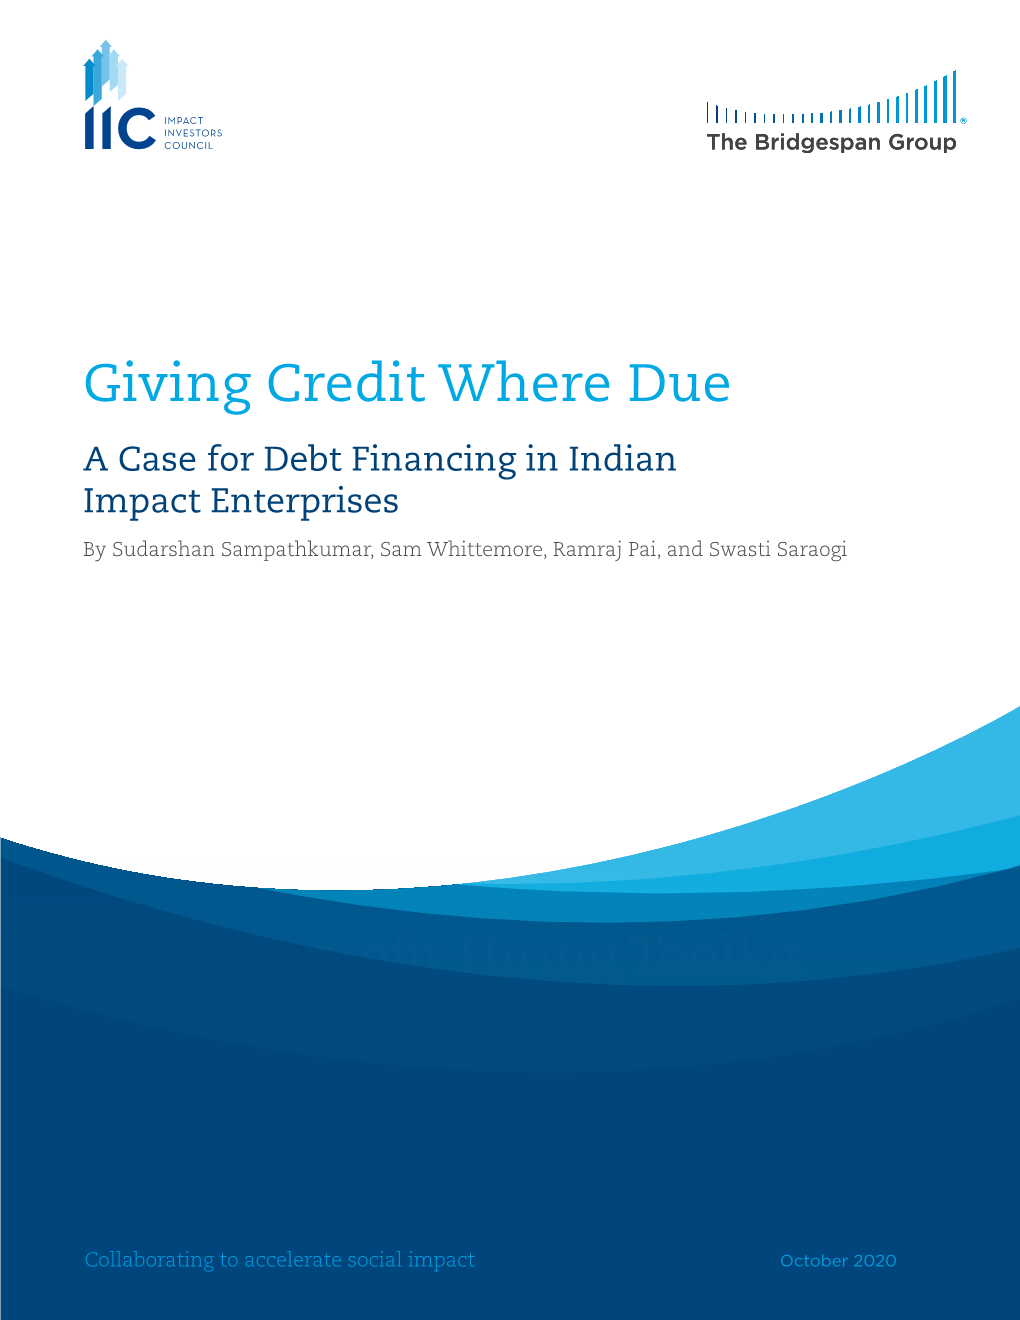 A Case for Debt Financing in Indian Impact Enterprises by Sudarshan Sampathkumar, Sam Whittemore, Ramraj Pai, and Swasti Saraogi